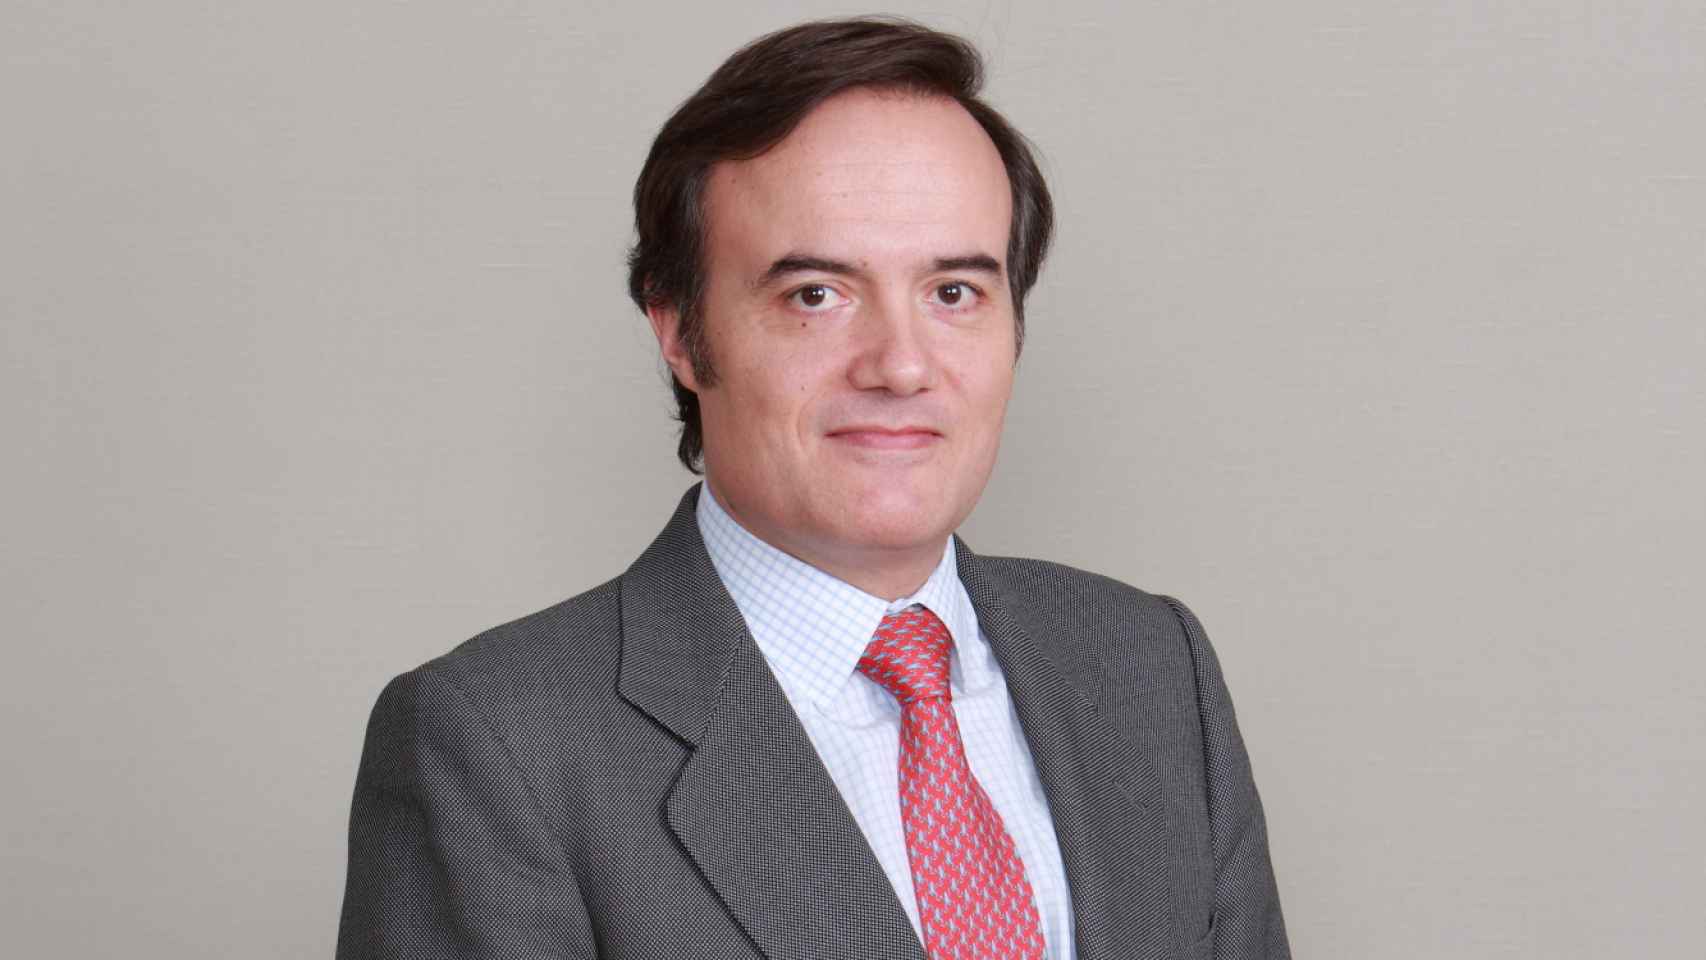 Álvaro Nieto, director general de Mirabaud España.